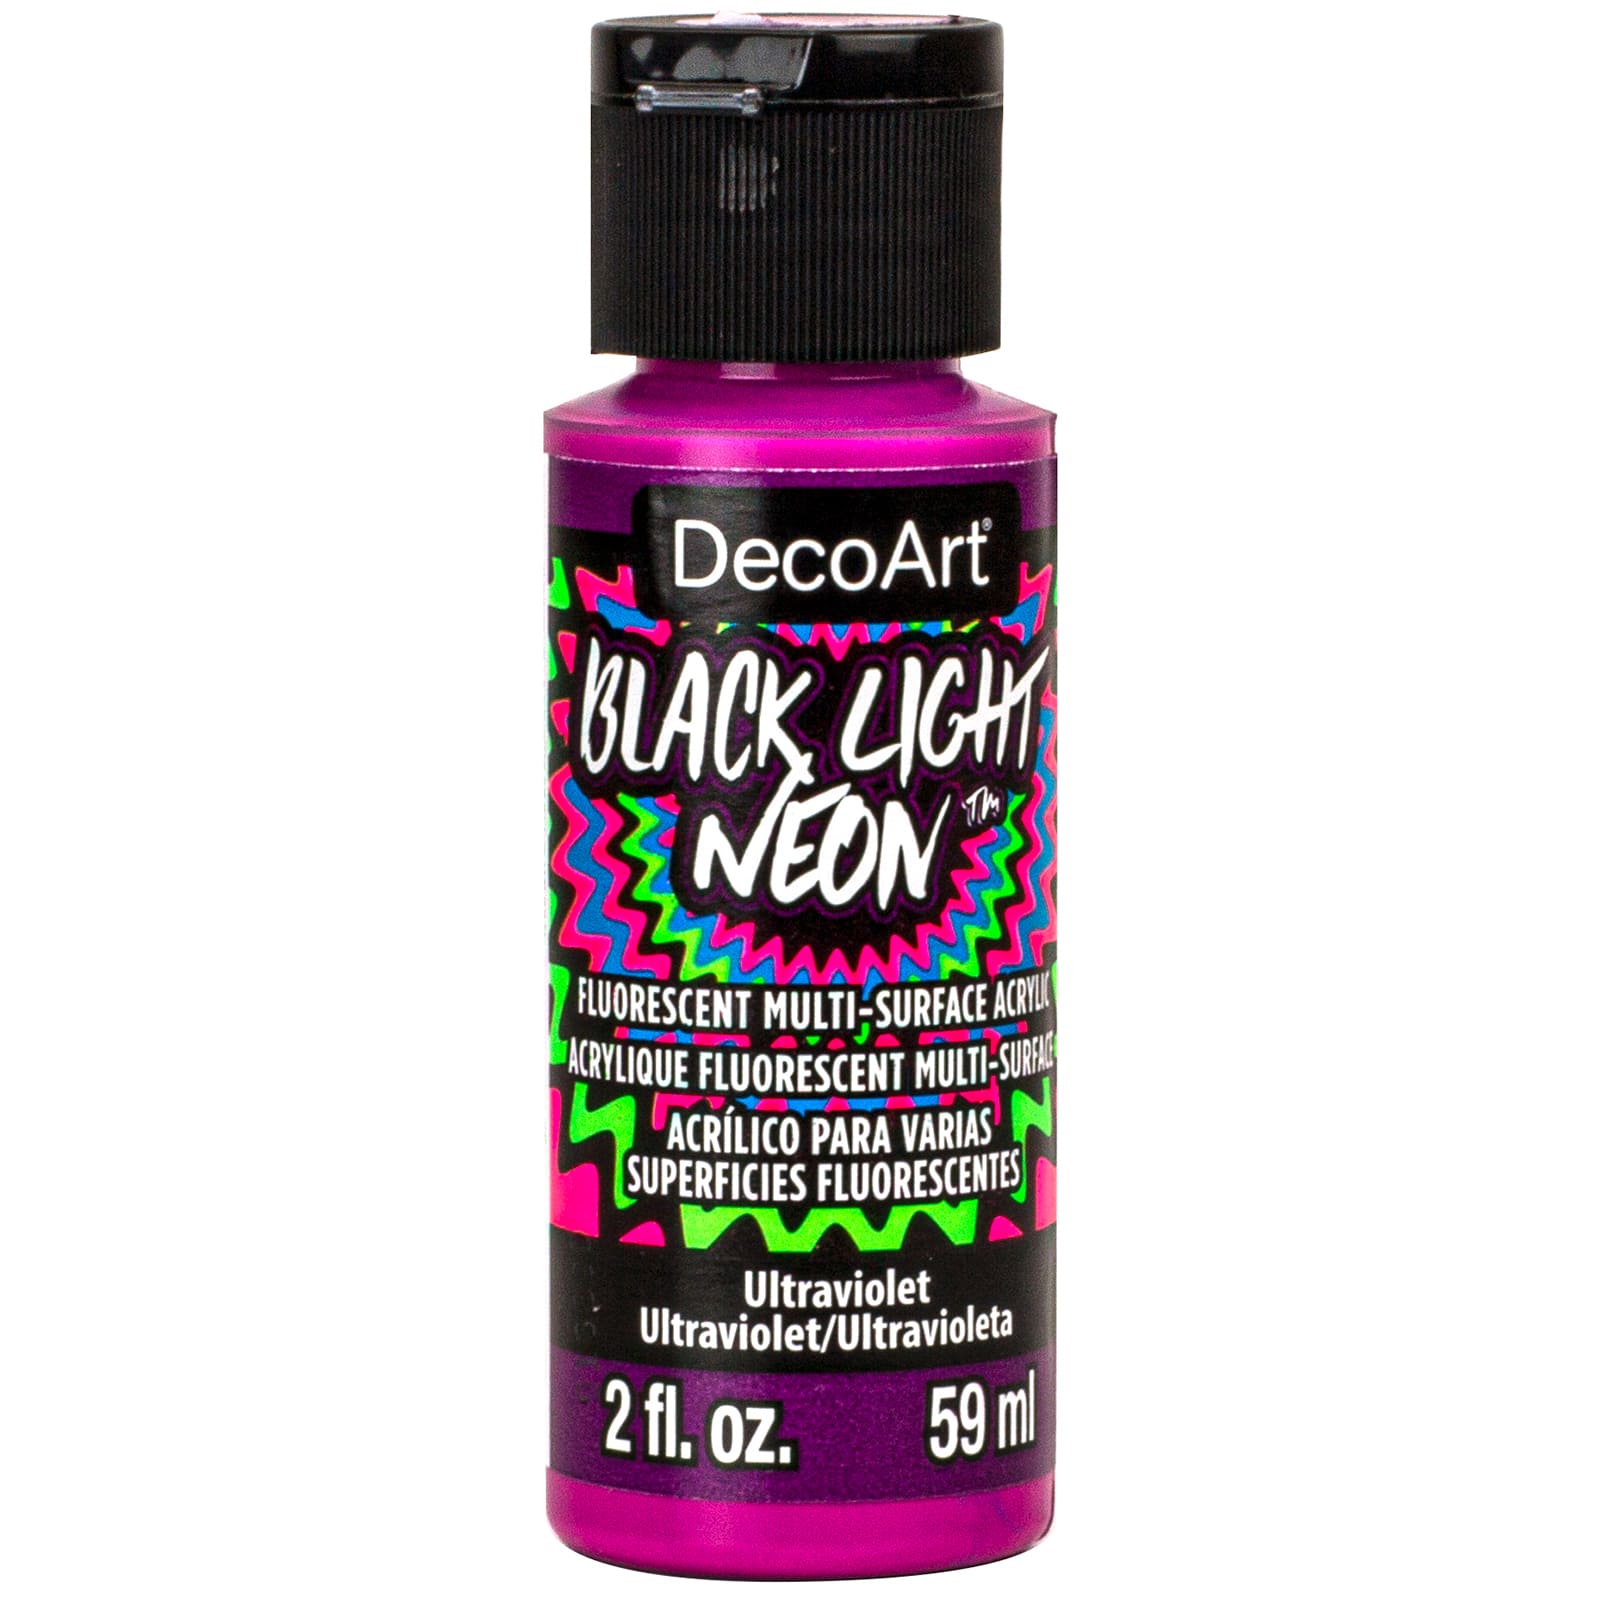 DecoArt® Black Light Neon™ Fluorescent Multi-Surface Acrylic Paint